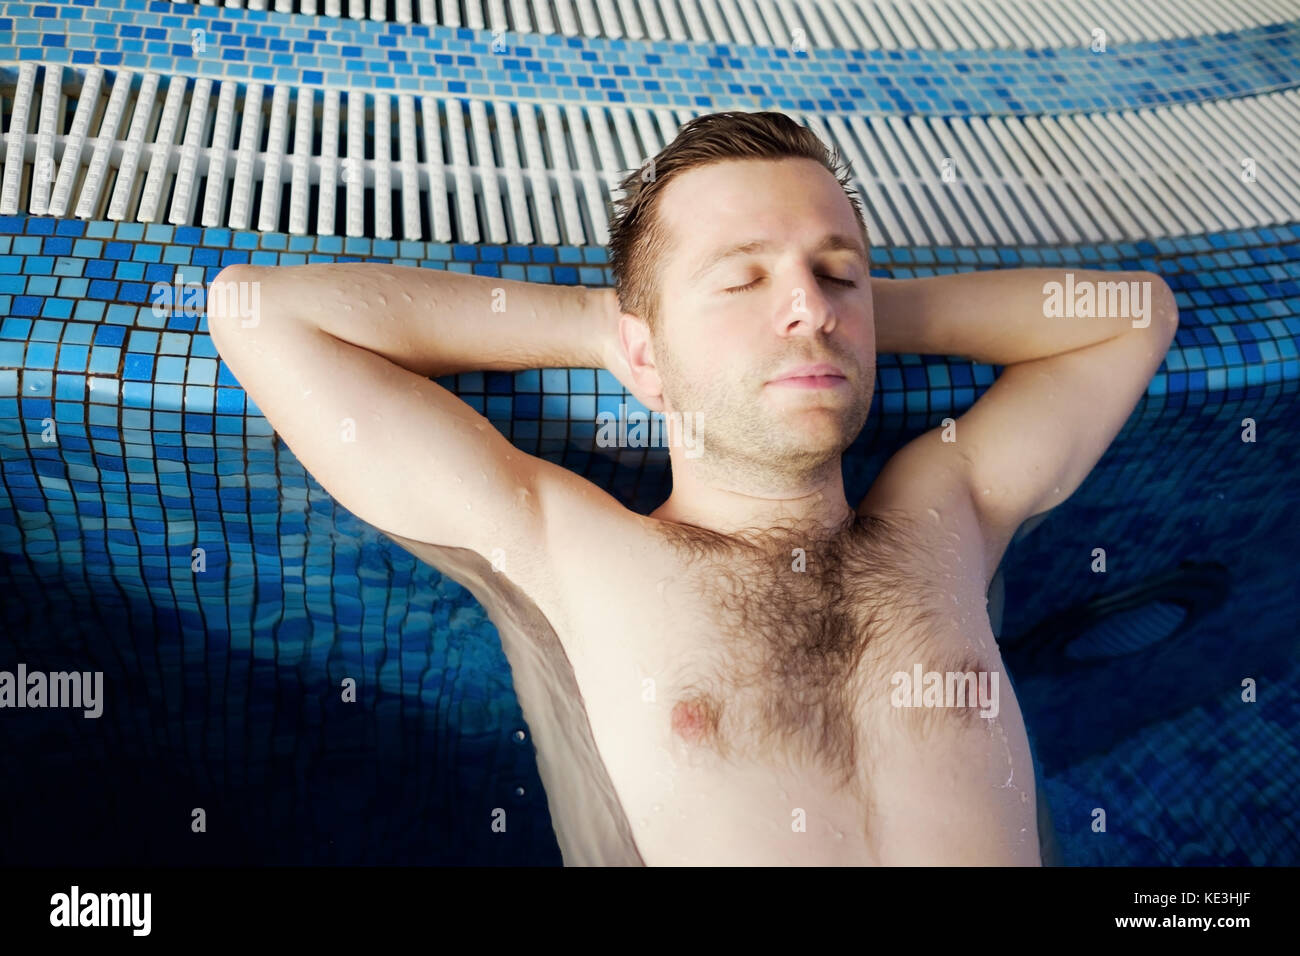 L'uomo è appoggiata sul bordo della piscina. Le mani sono dietro la testa. Foto Stock